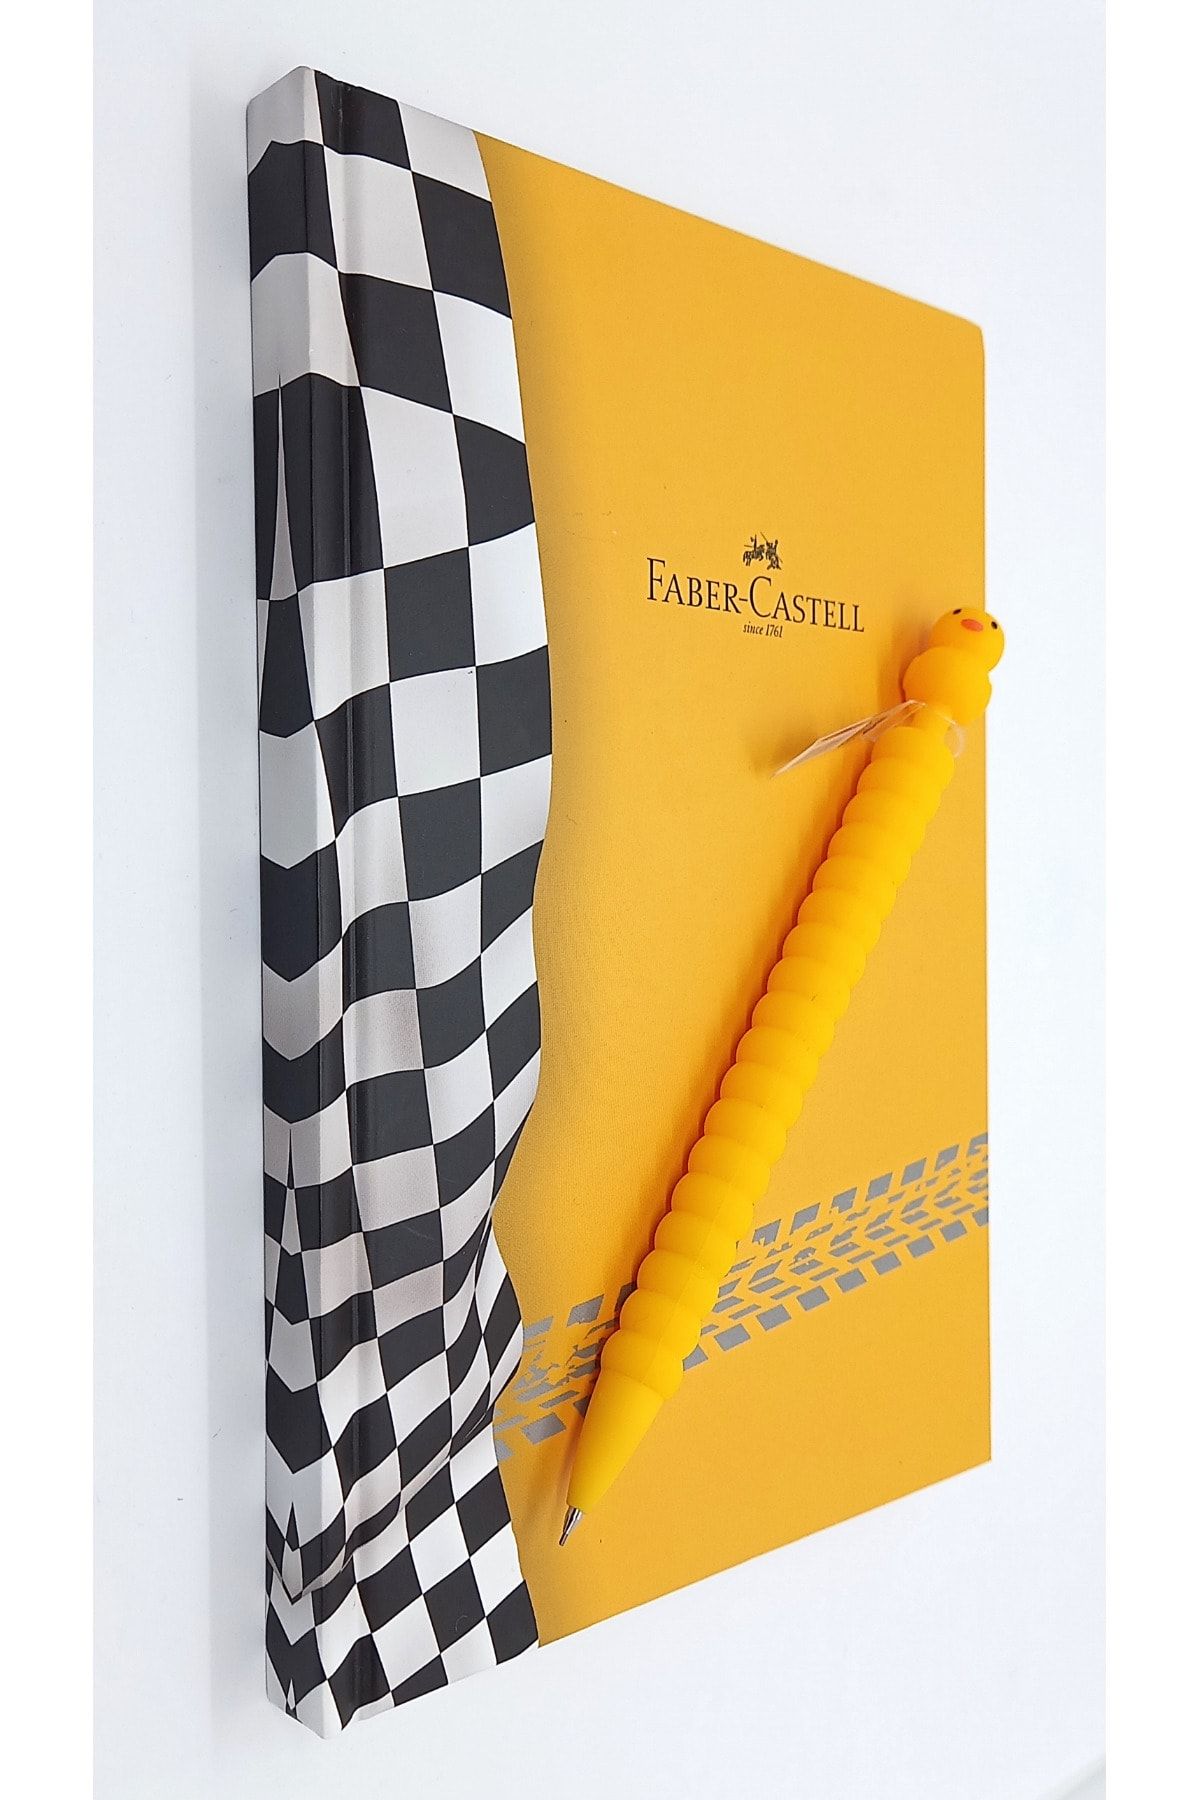 Faber Castell A5 Yarışçı Ajanda Sarı Ve Civciv Versatil 0.7 Mekanik Kalem